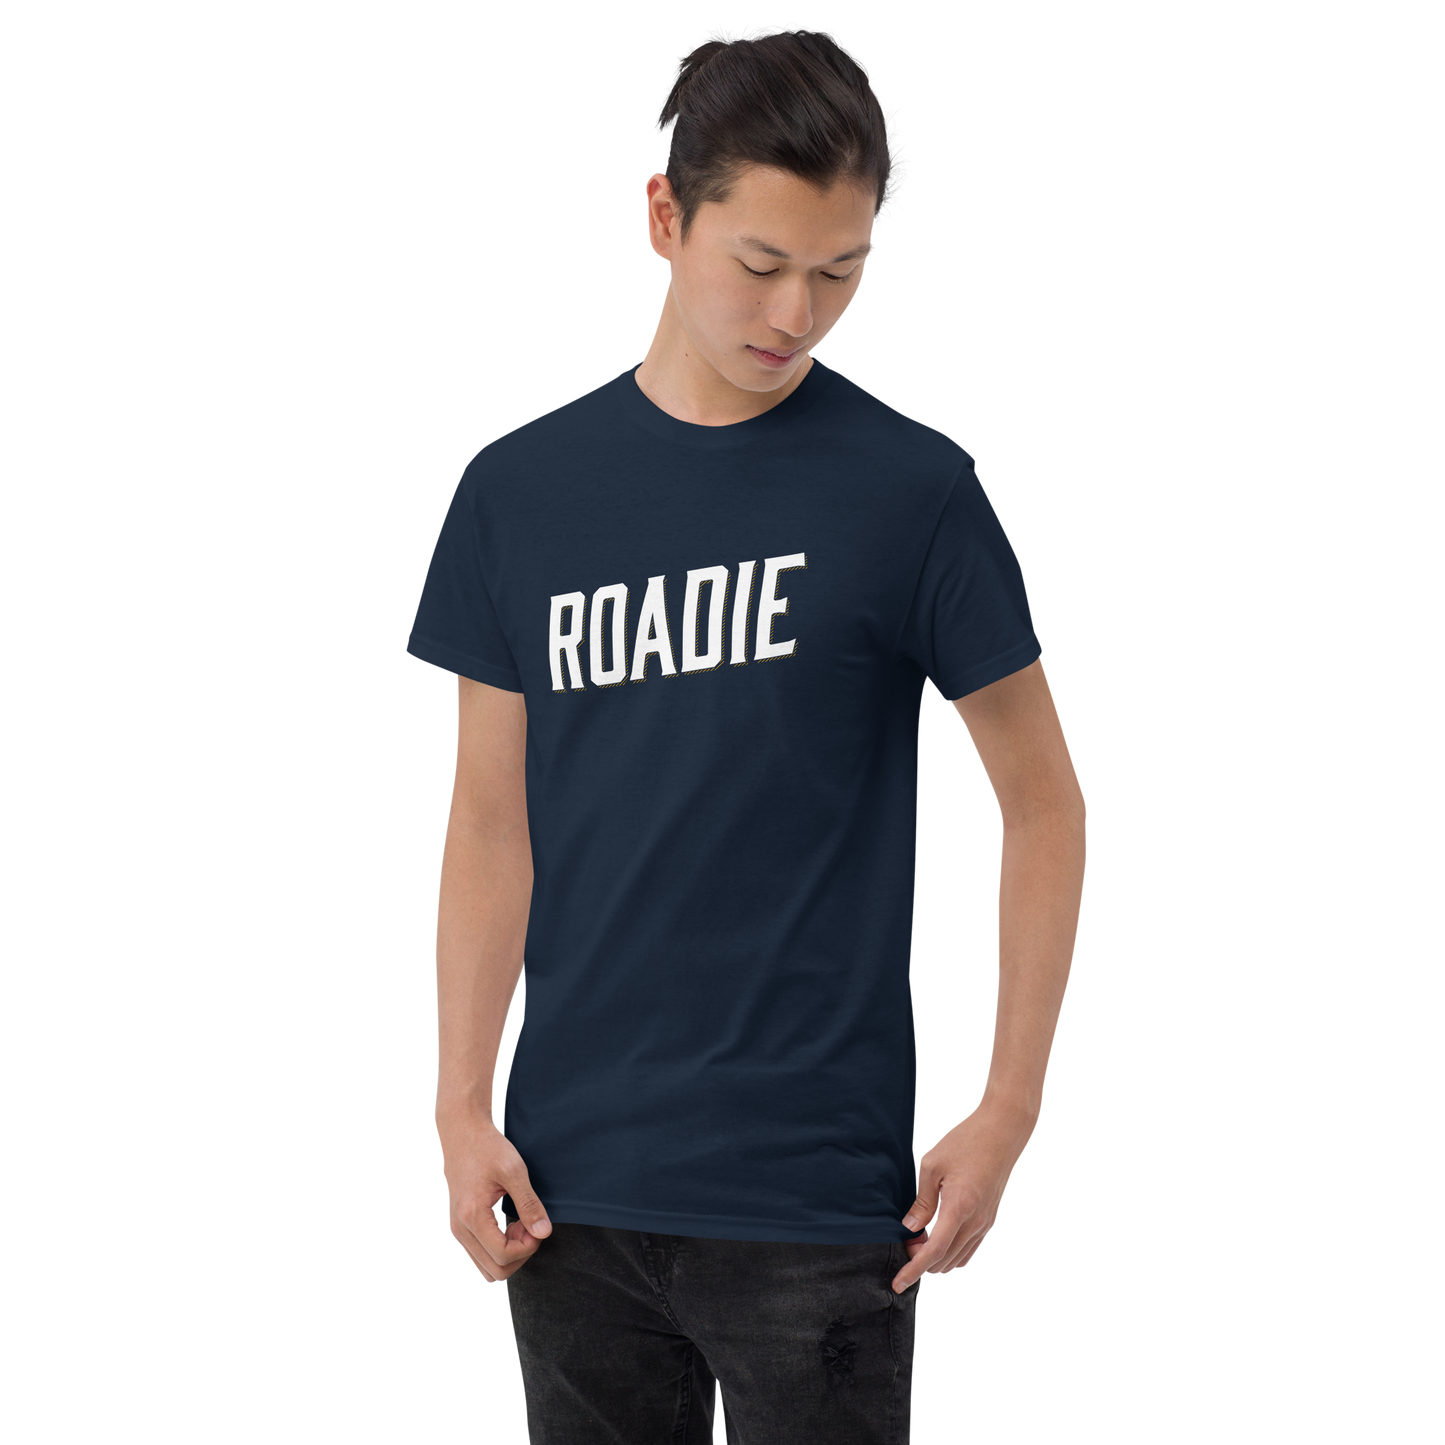 Roadie - Men's Short Sleeve T-Shirt